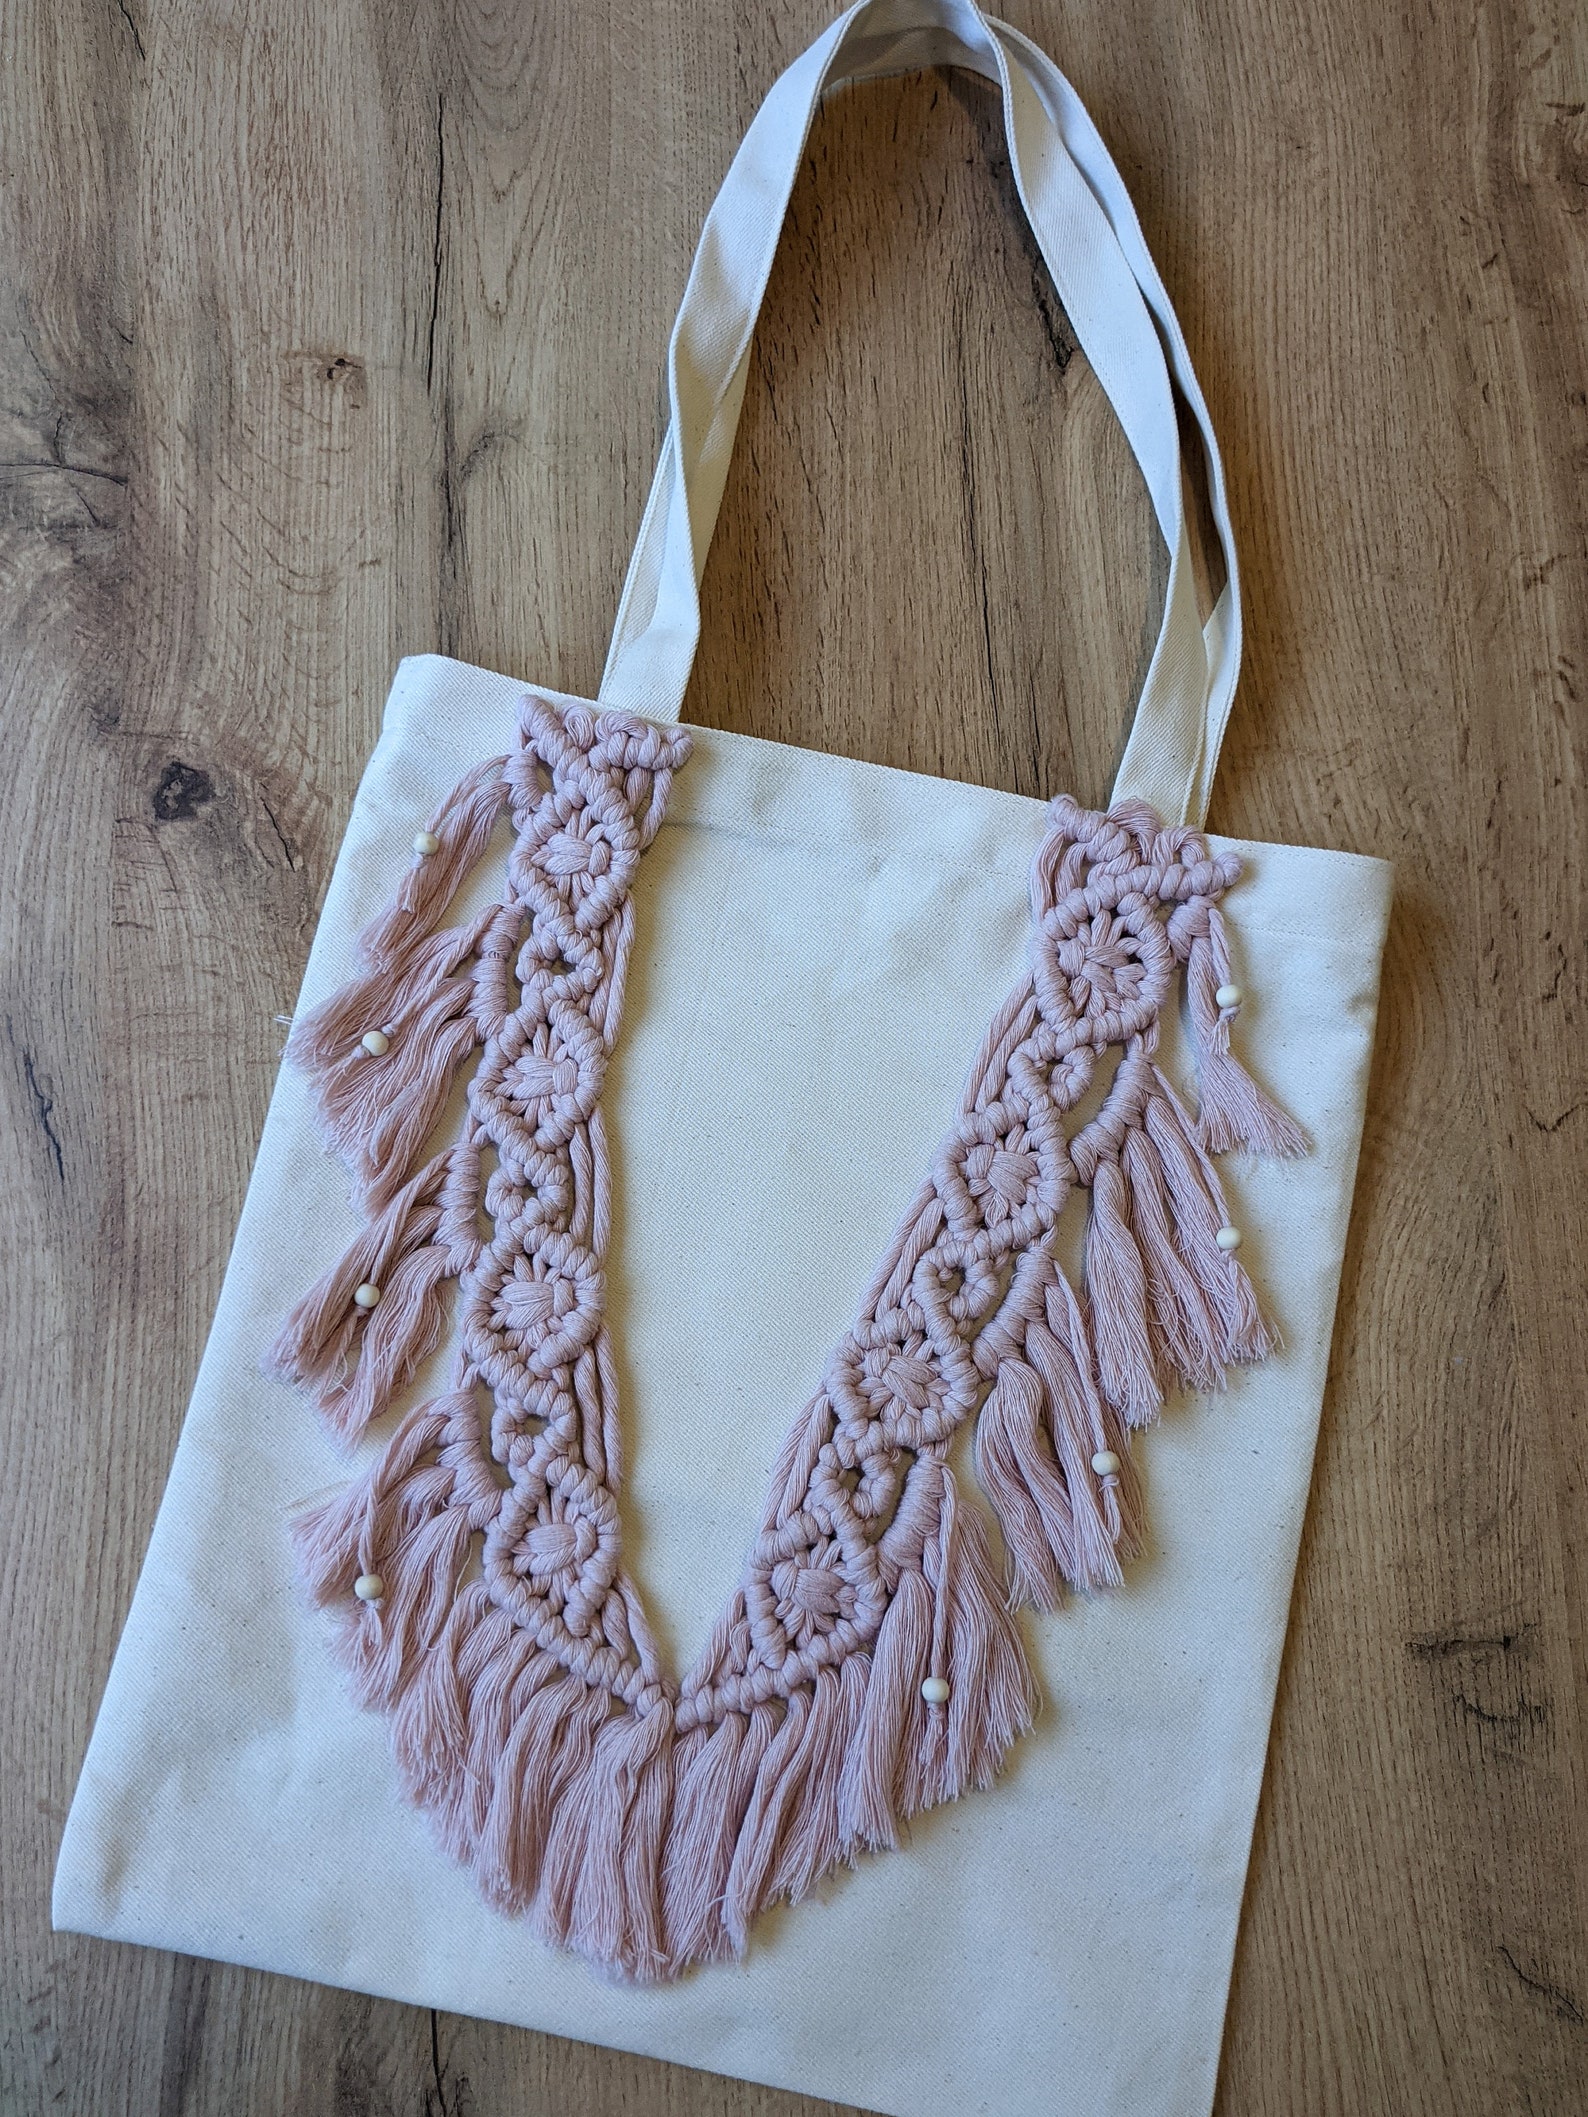 Fringe boho tote bag macrame tote bag with beads oversized | Etsy